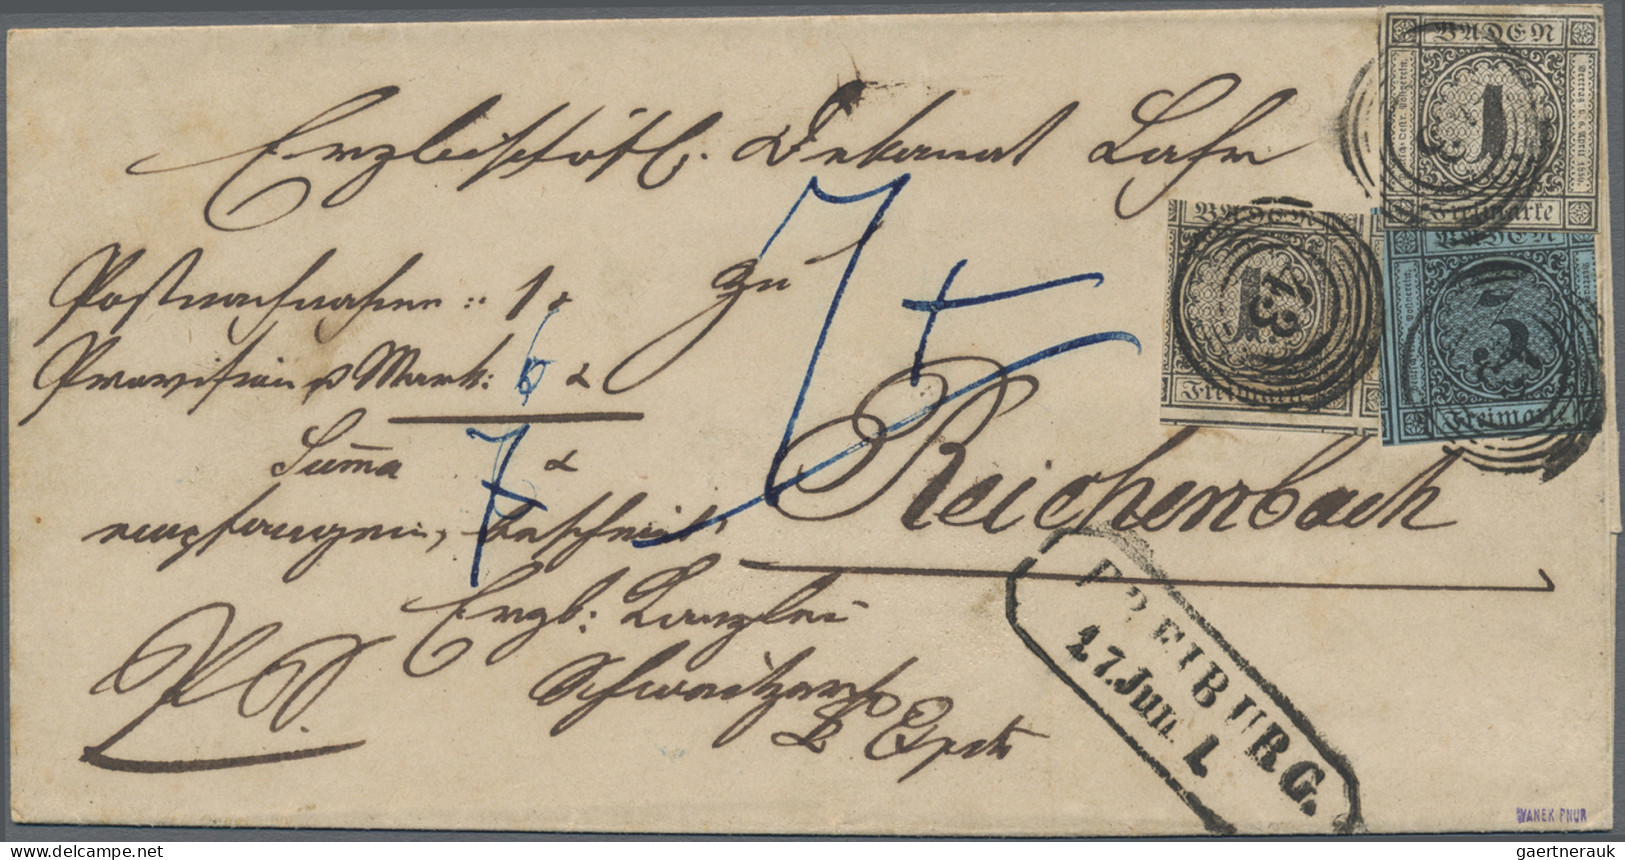 Baden - Marken und Briefe: 1862/1868 (ca.), Gehaltvolle Partie von über 210 Bele